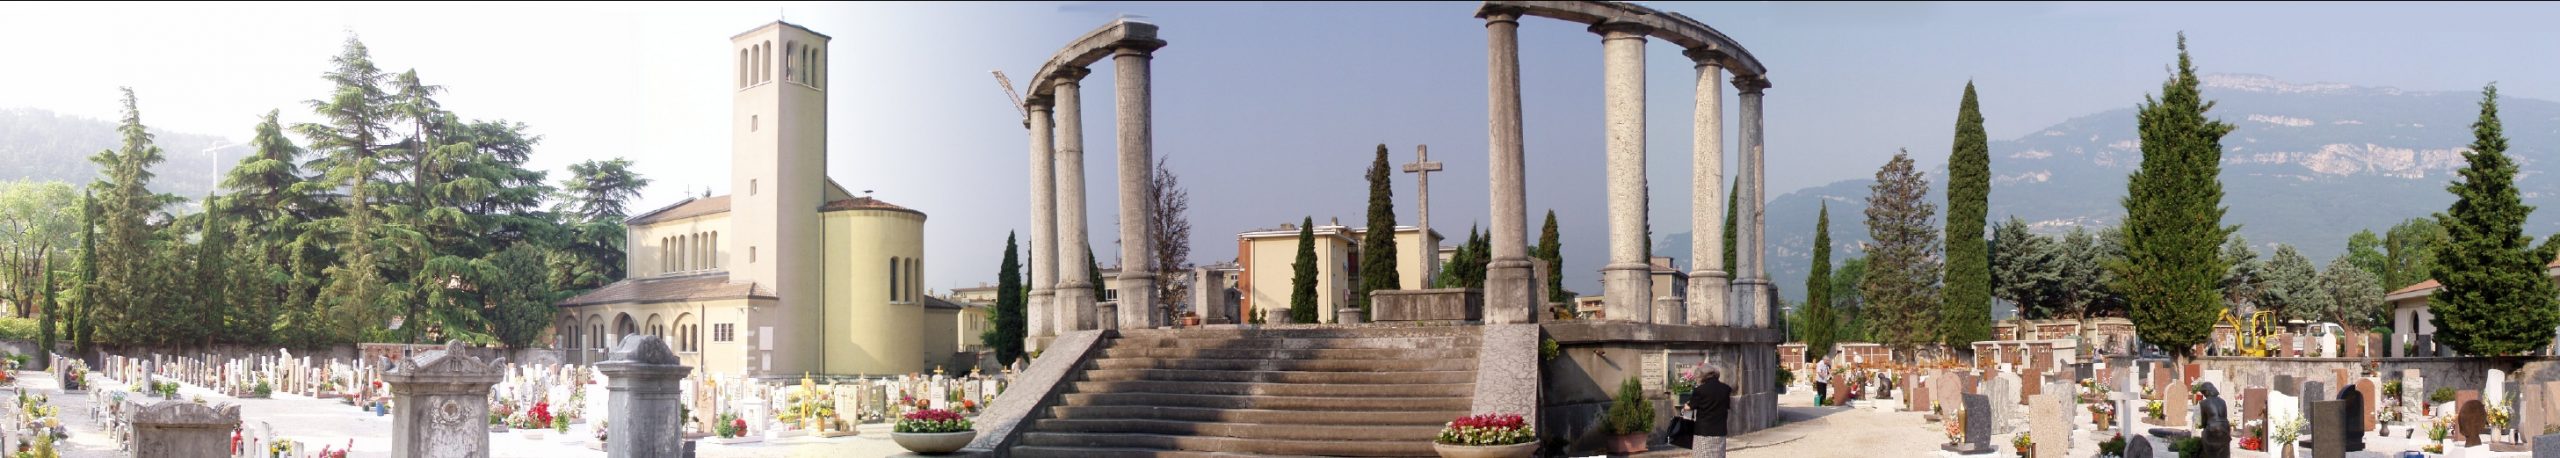 Cimitero S.Maria